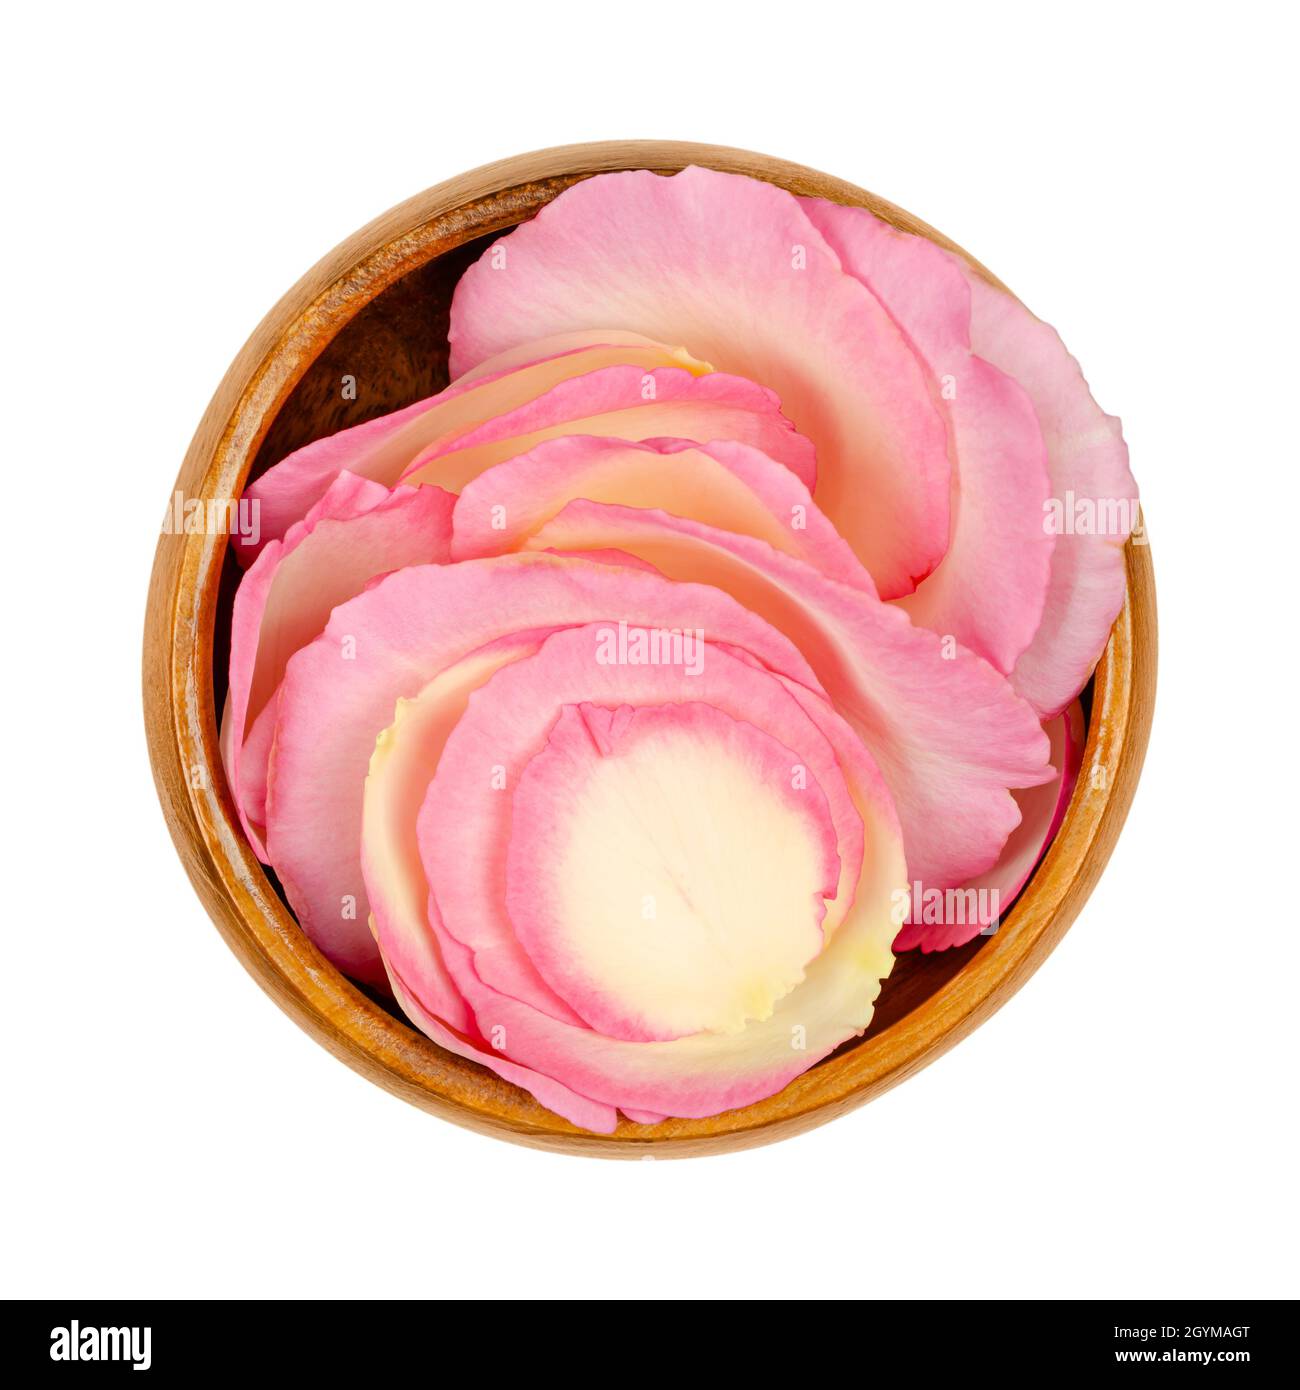 Petali di rosa in una ciotola di legno. Petali appena raccolti di una rosa giardino di colore rosa chiaro, chiamata Cina, cinese o rosa bengala. Rosa chinensis. Foto Stock